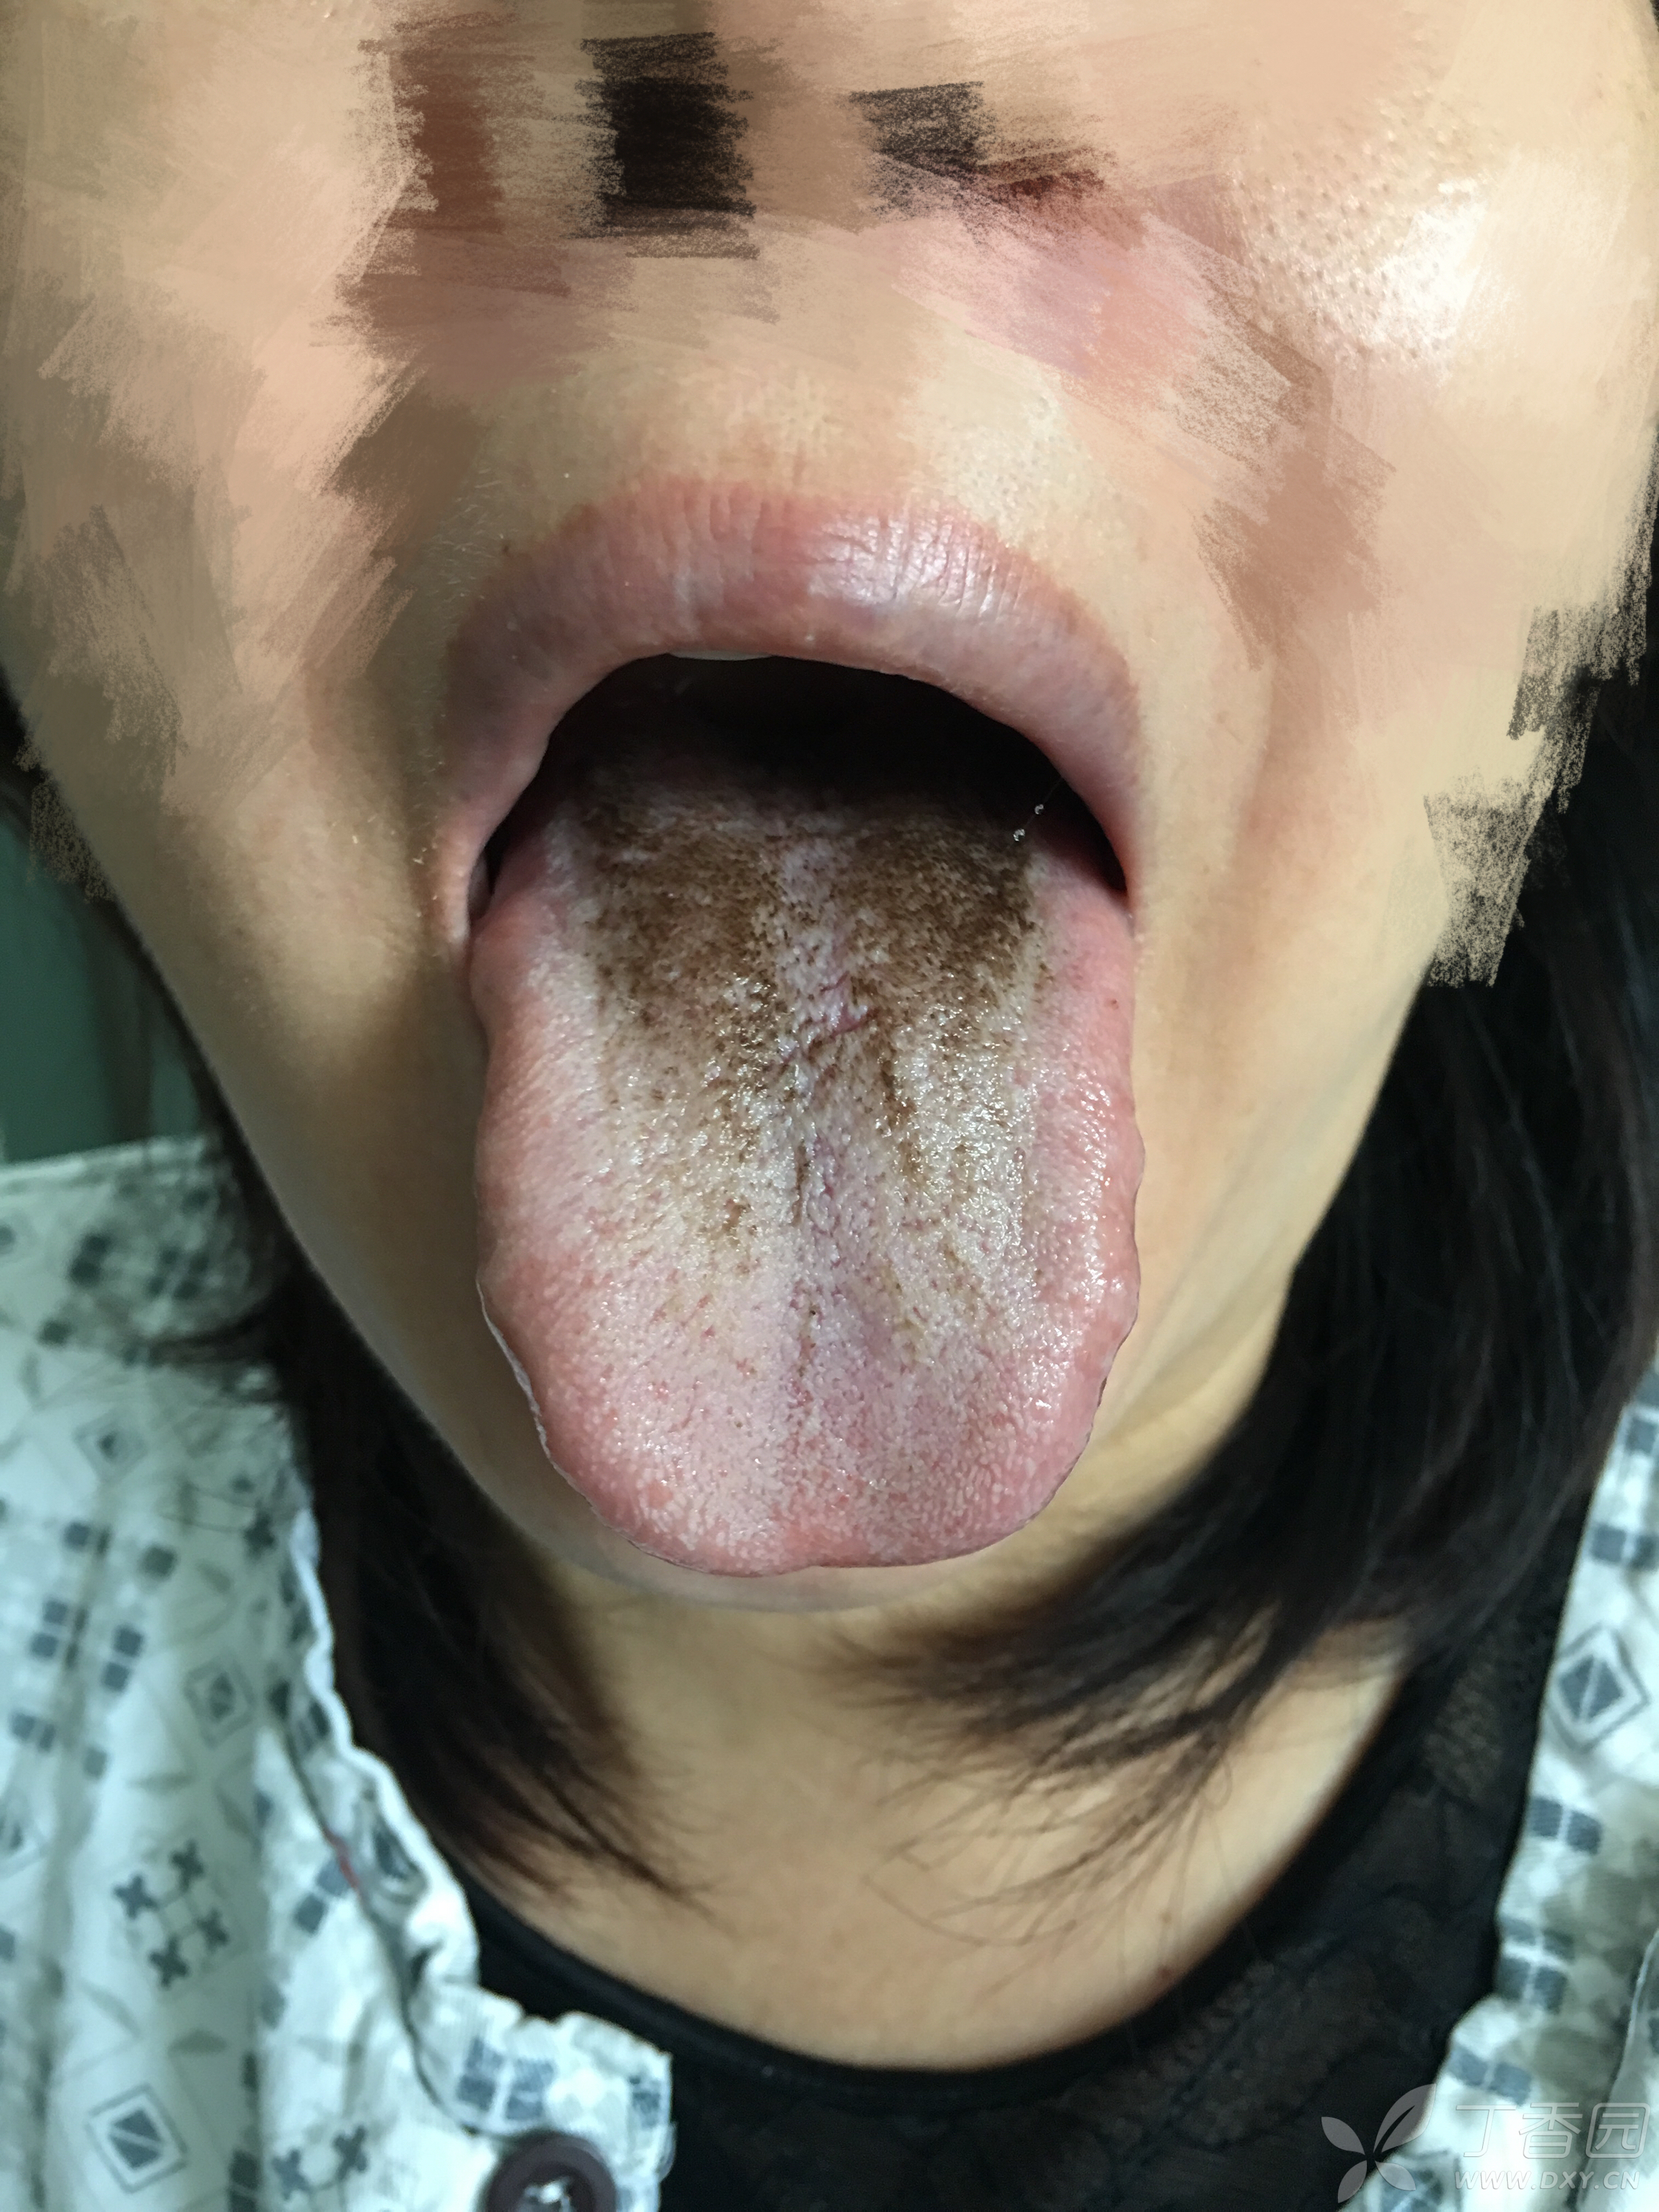 无痛肠镜检查后舌苔变黑,请教大家是什么导致的?